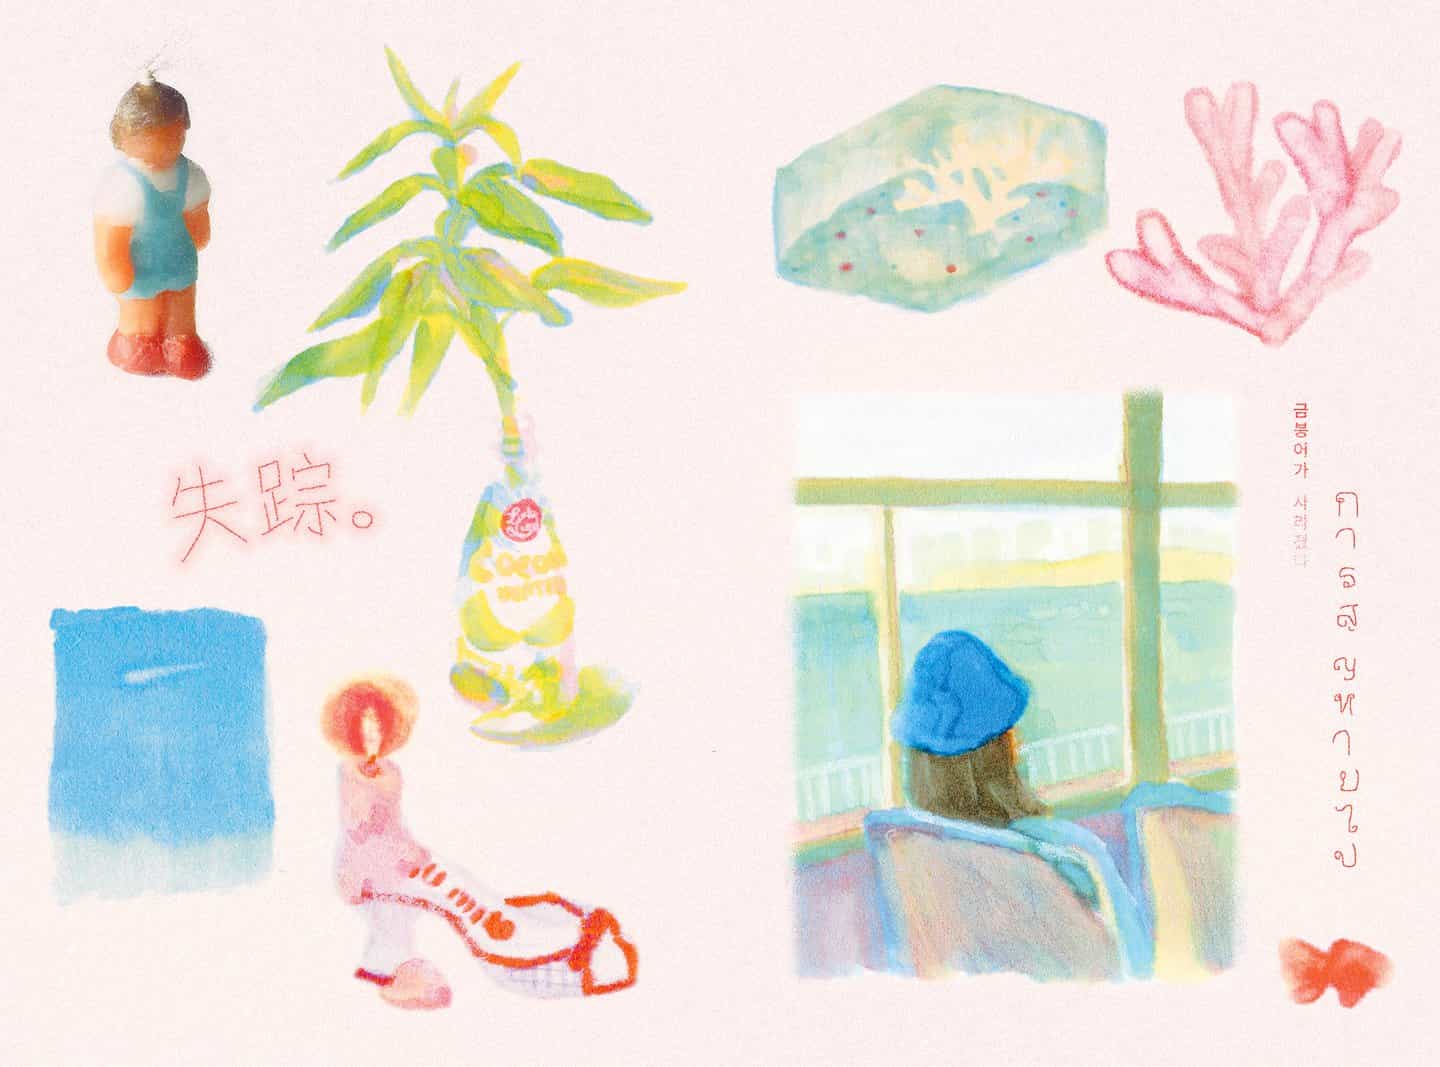 Yoojin Ahn elabora ilustraciones lindas y sentimentales inspiradas en la vida cotidiana en Seúl